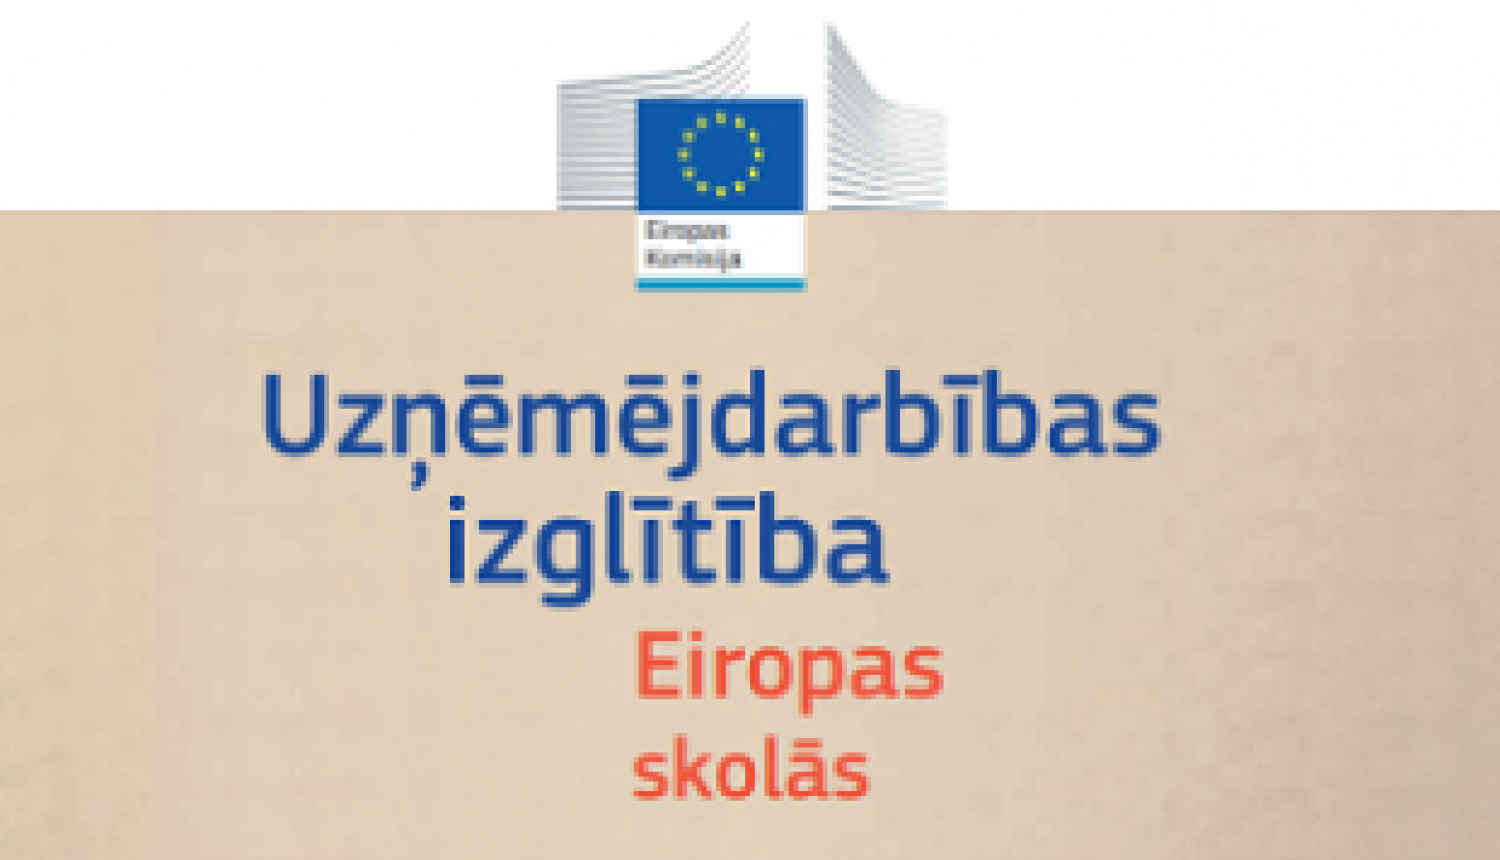 Publicēts Eurydice ziņojums par uzņēmējdarbības izglītību Eiropas skolās